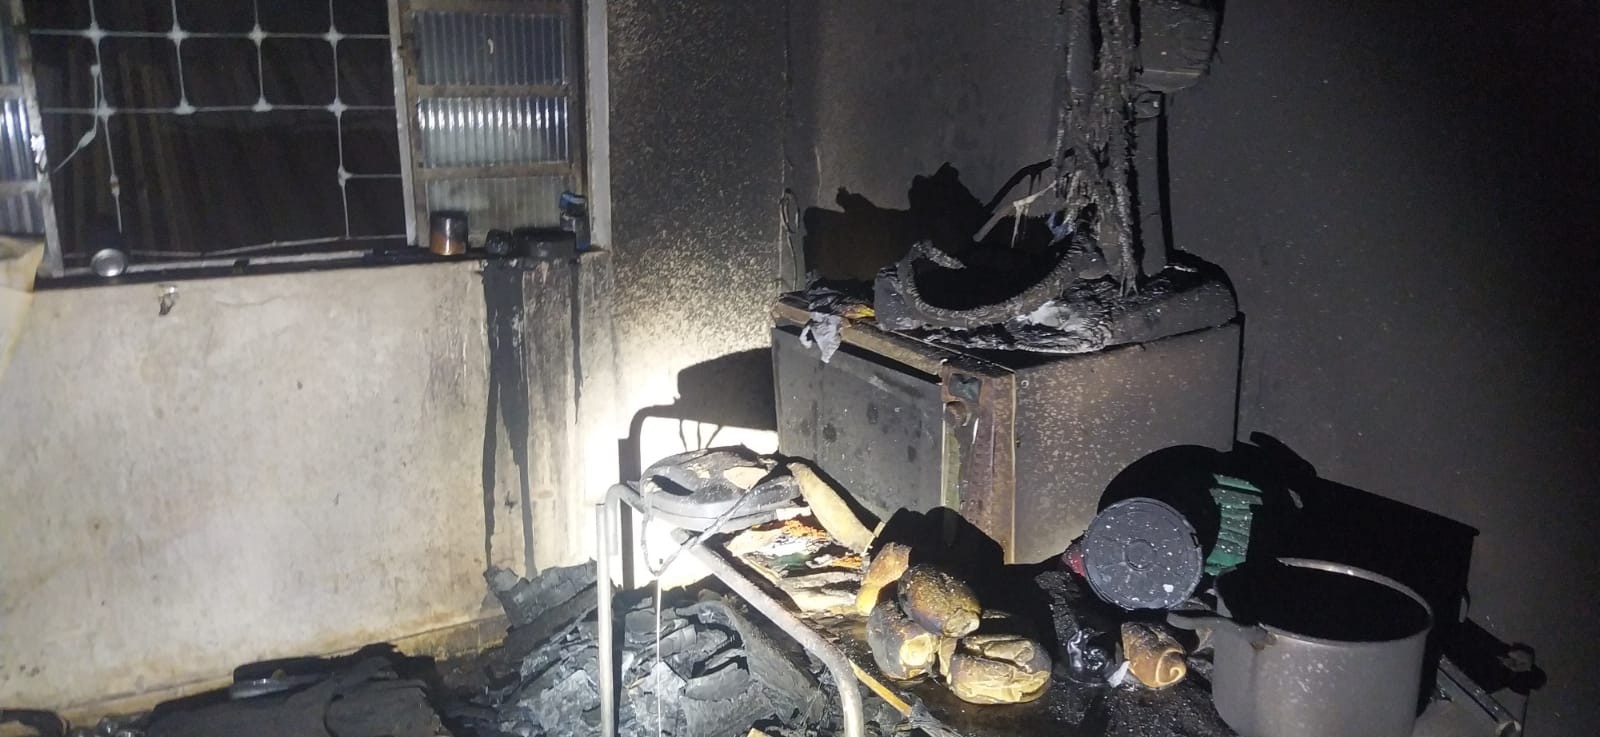 Idoso morre após incêndio no apartamento onde morava em Governador Valadares 